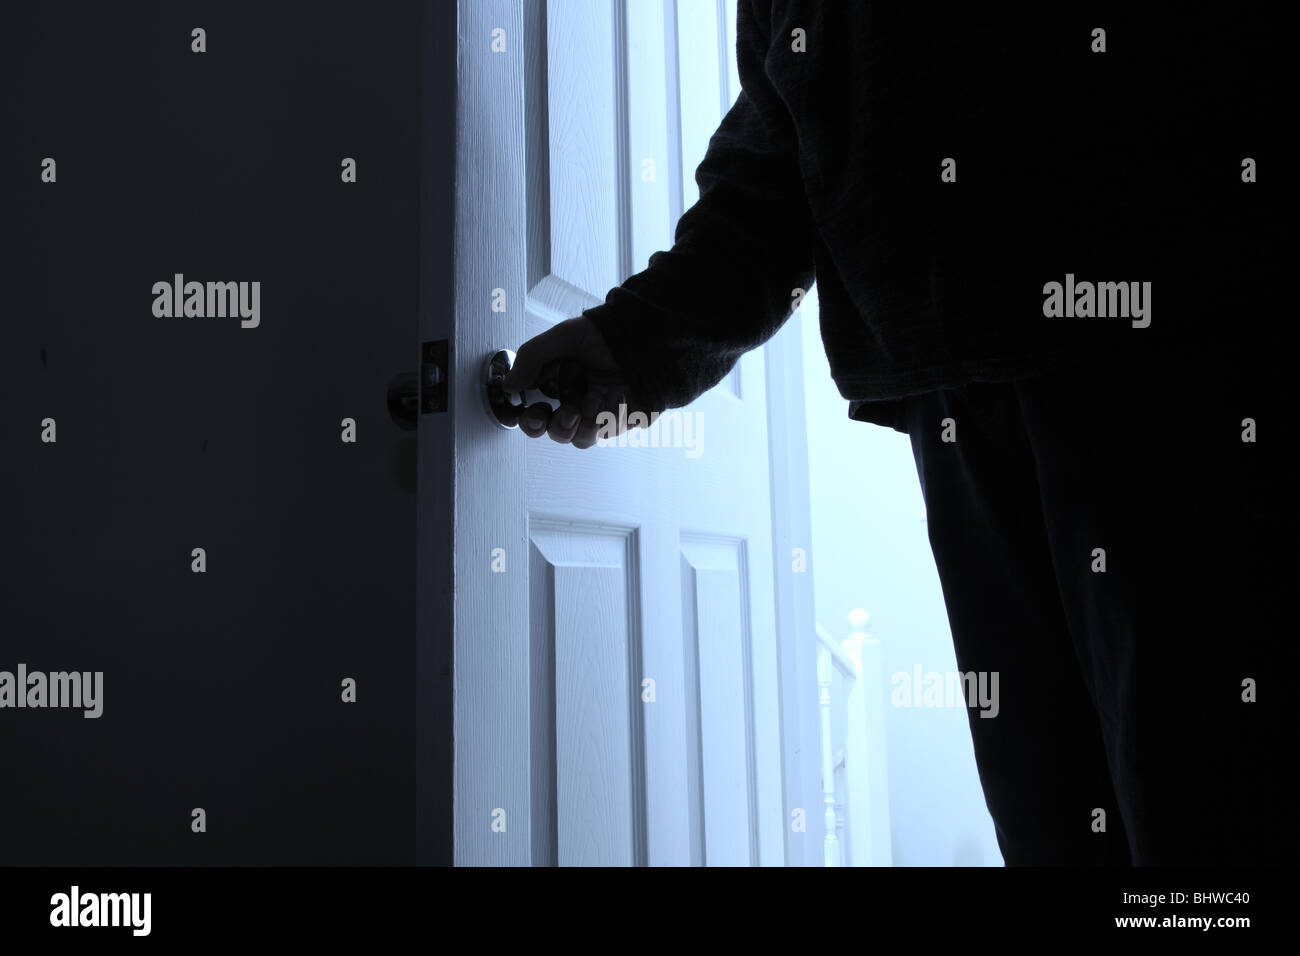 La mano del hombre girando la manija de la puerta, como él entra en una habitación oscura Foto de stock